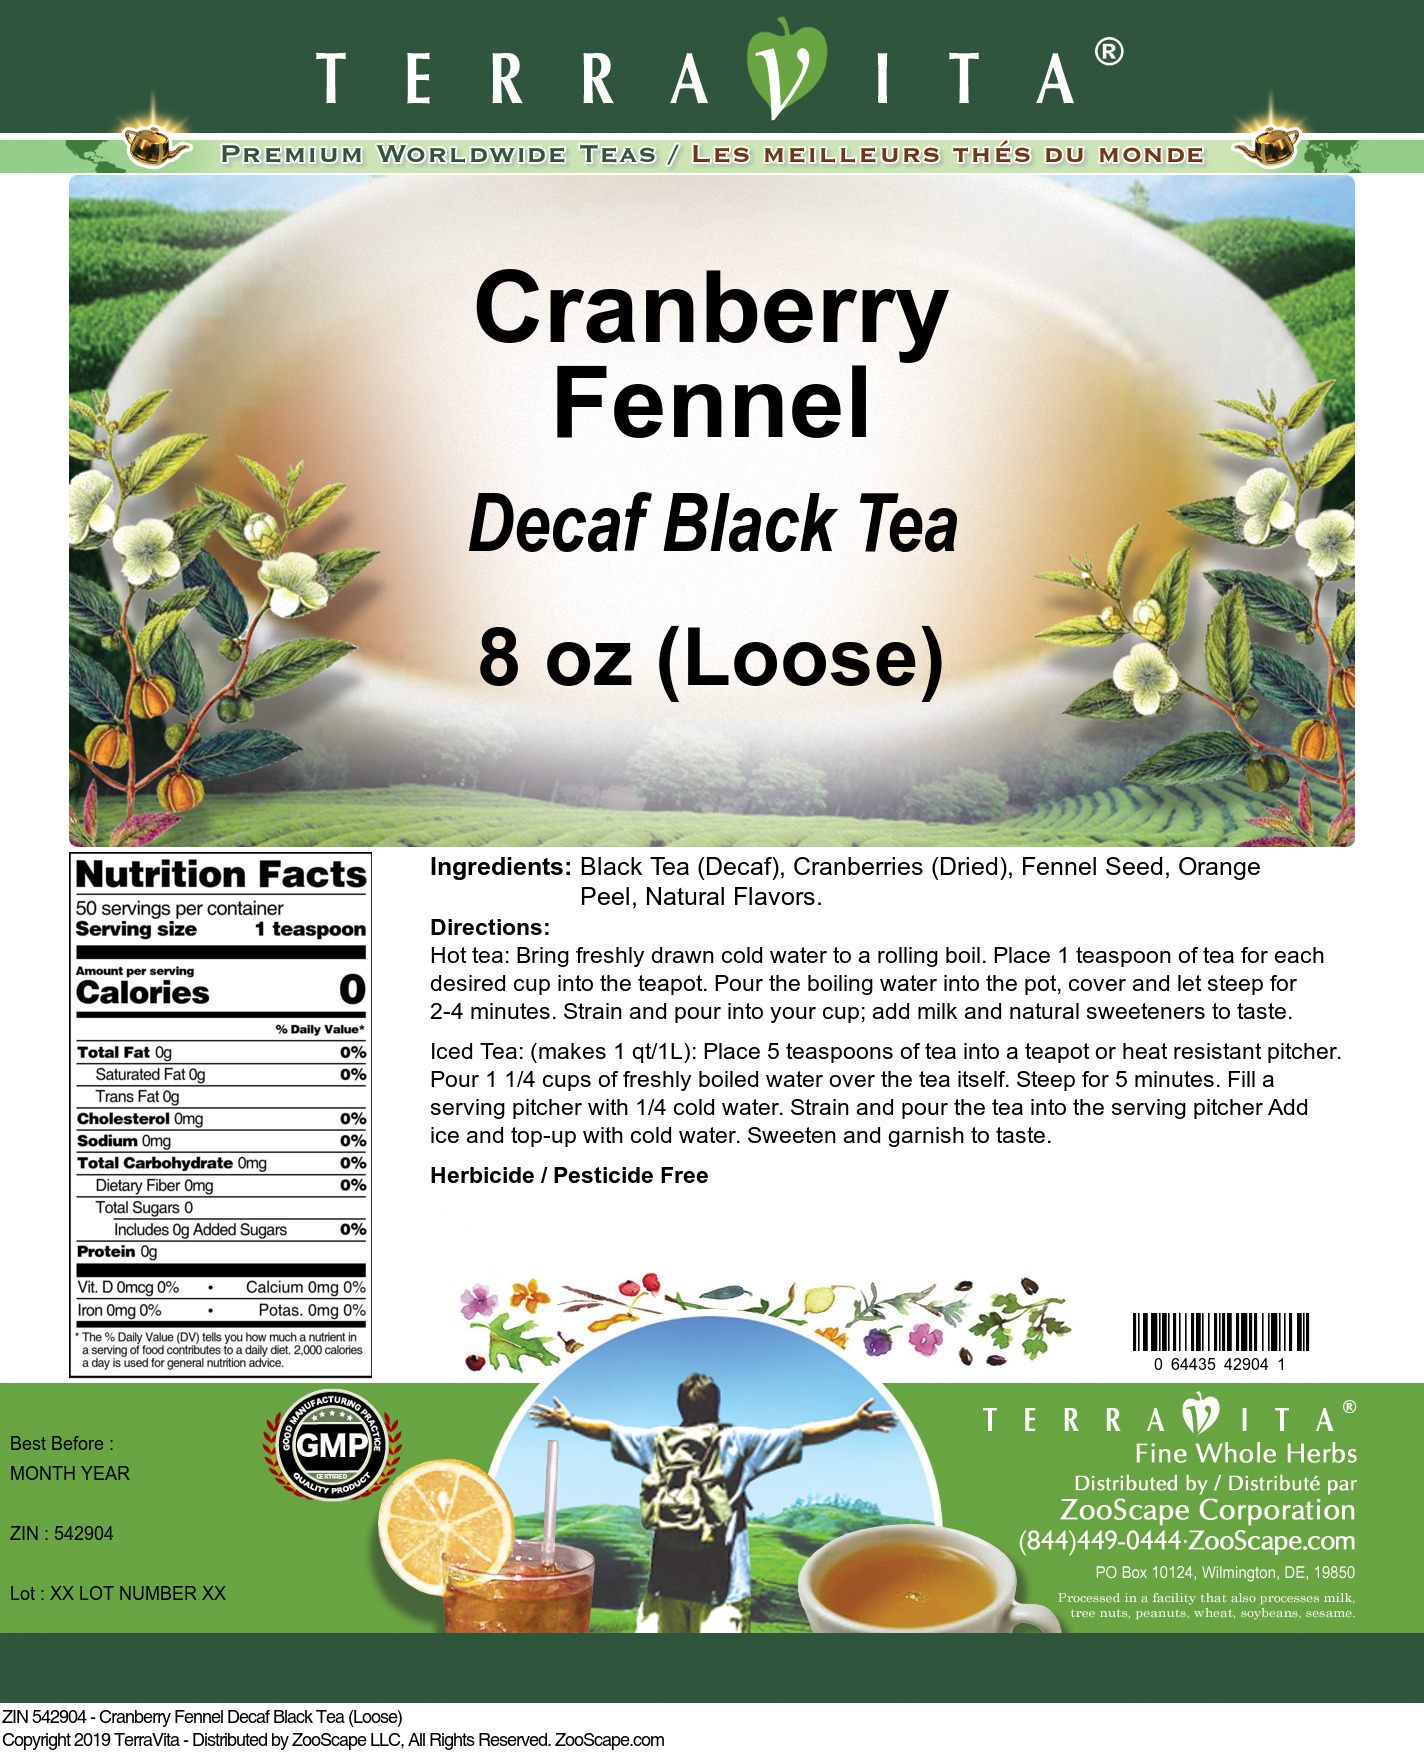 Cranberry Fennel Decaf Black Tea (Loose) - Label